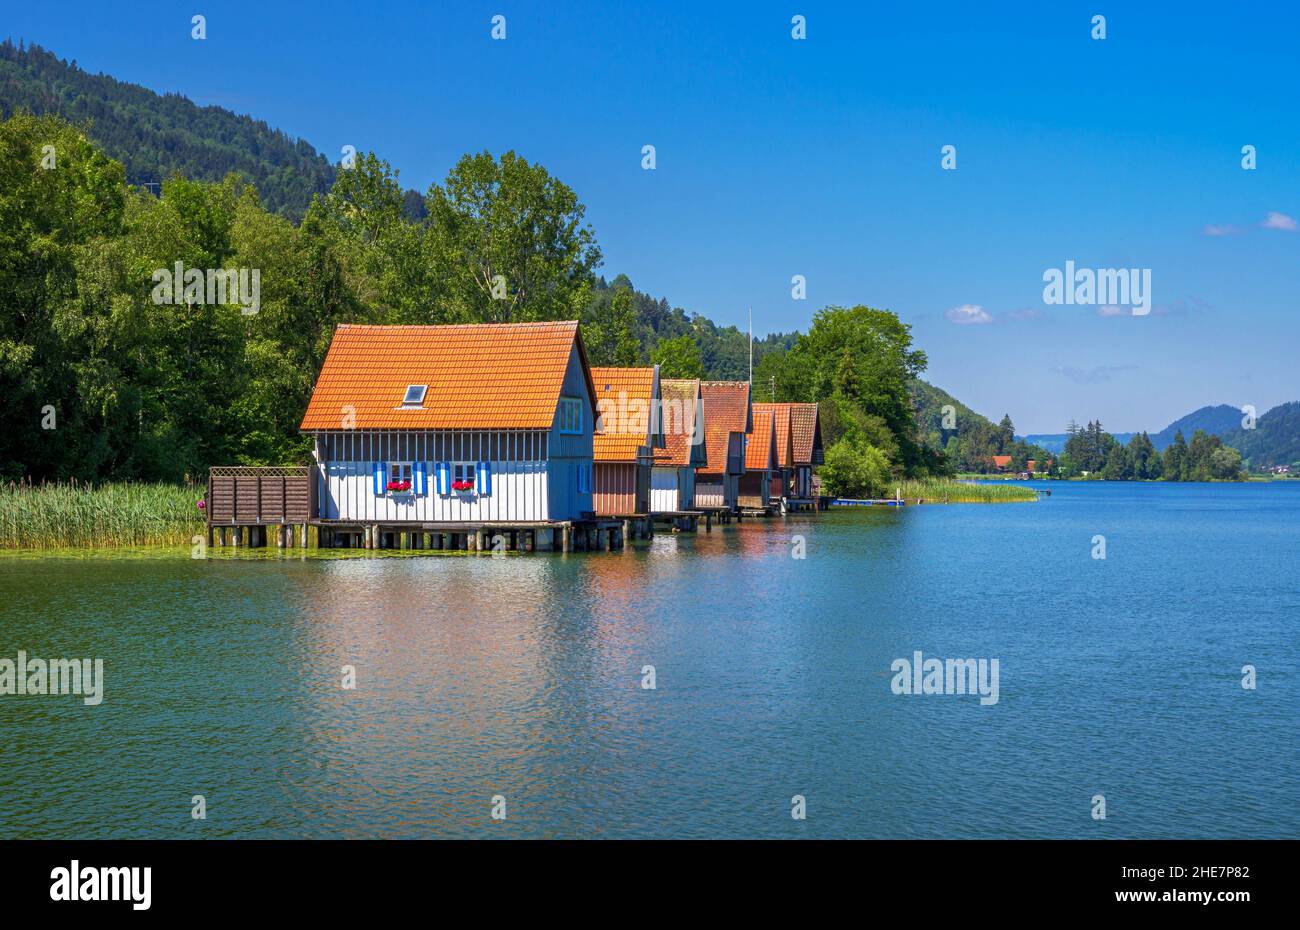 Boathouses on Grosser Alpsee, Allgäu, Bavaria, Germany Stock Photo